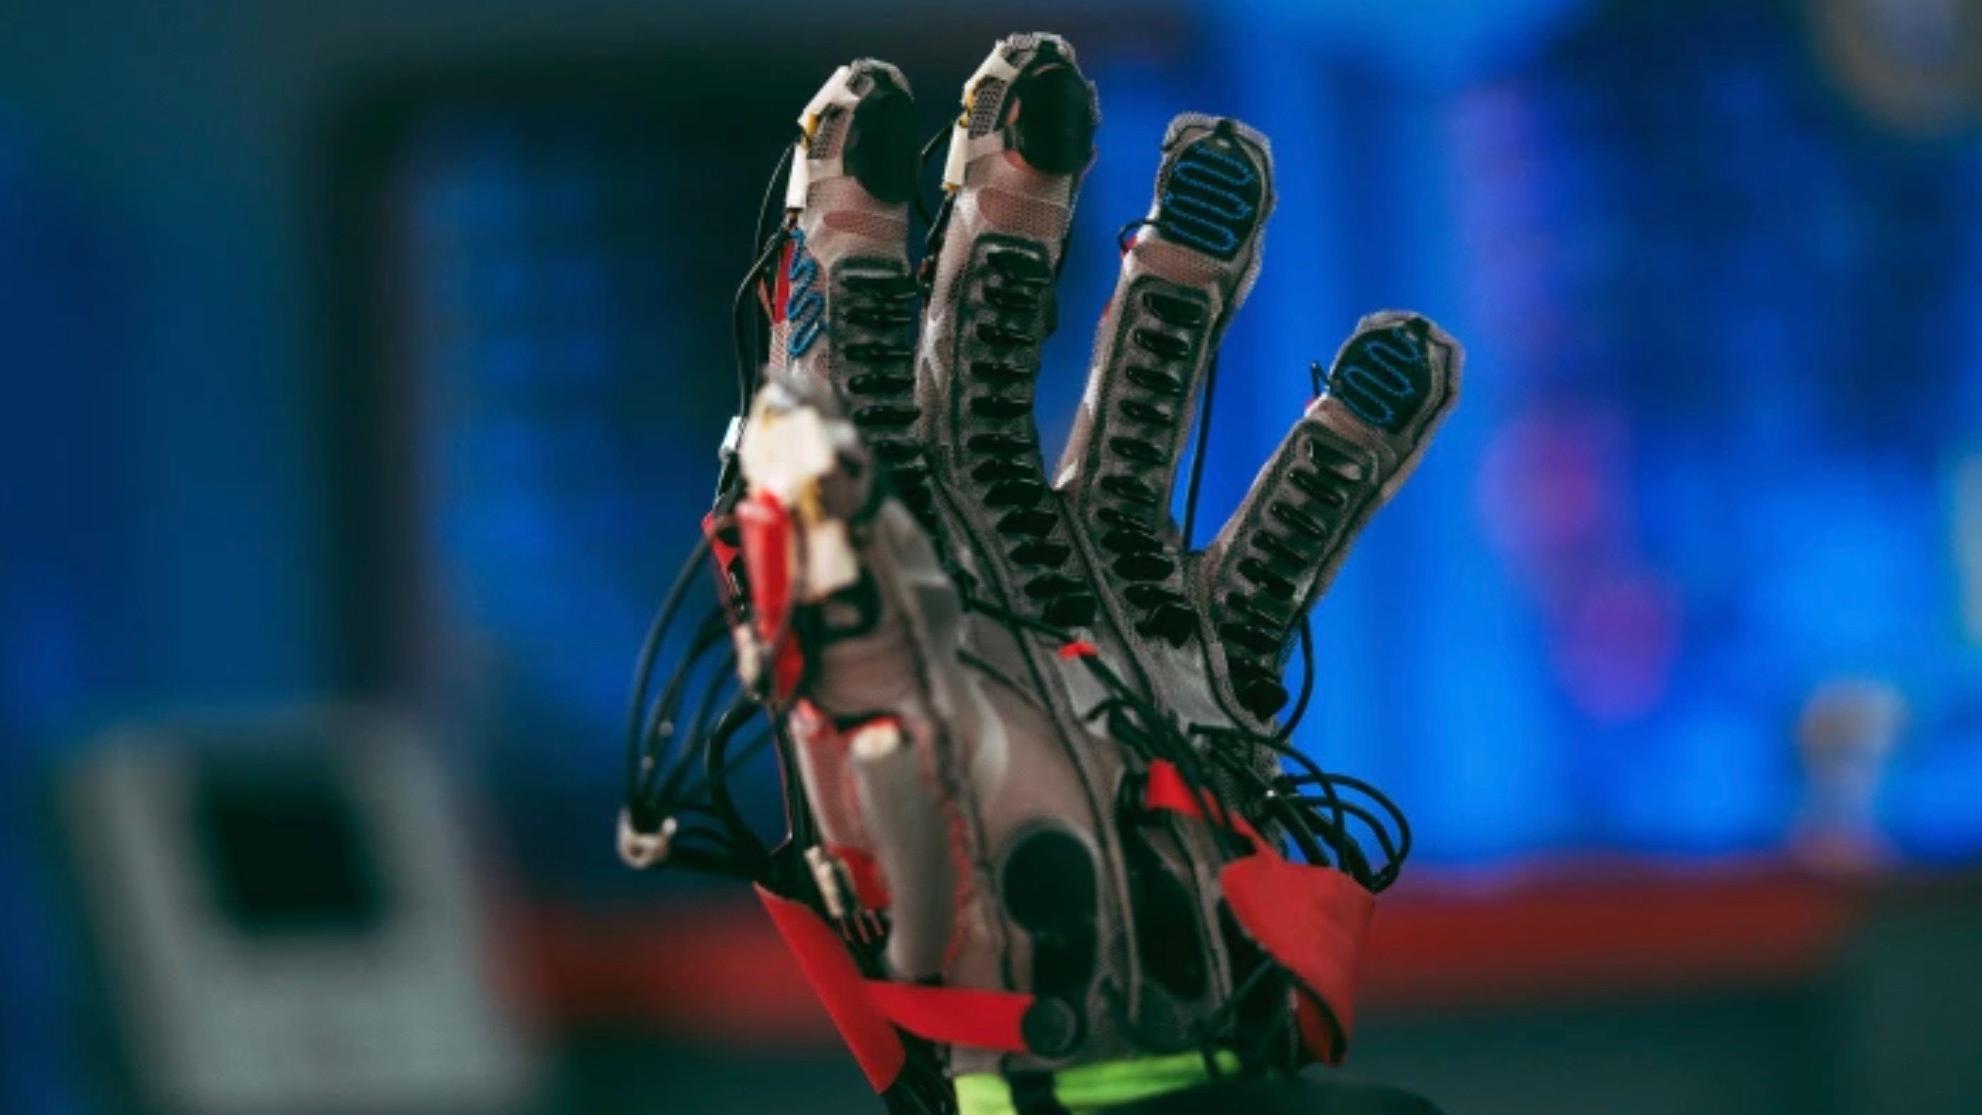 Meta (раніше Facebook) презентувала рукавичку, яка дозволяє відчувати об'єкти у віртуальній реальності